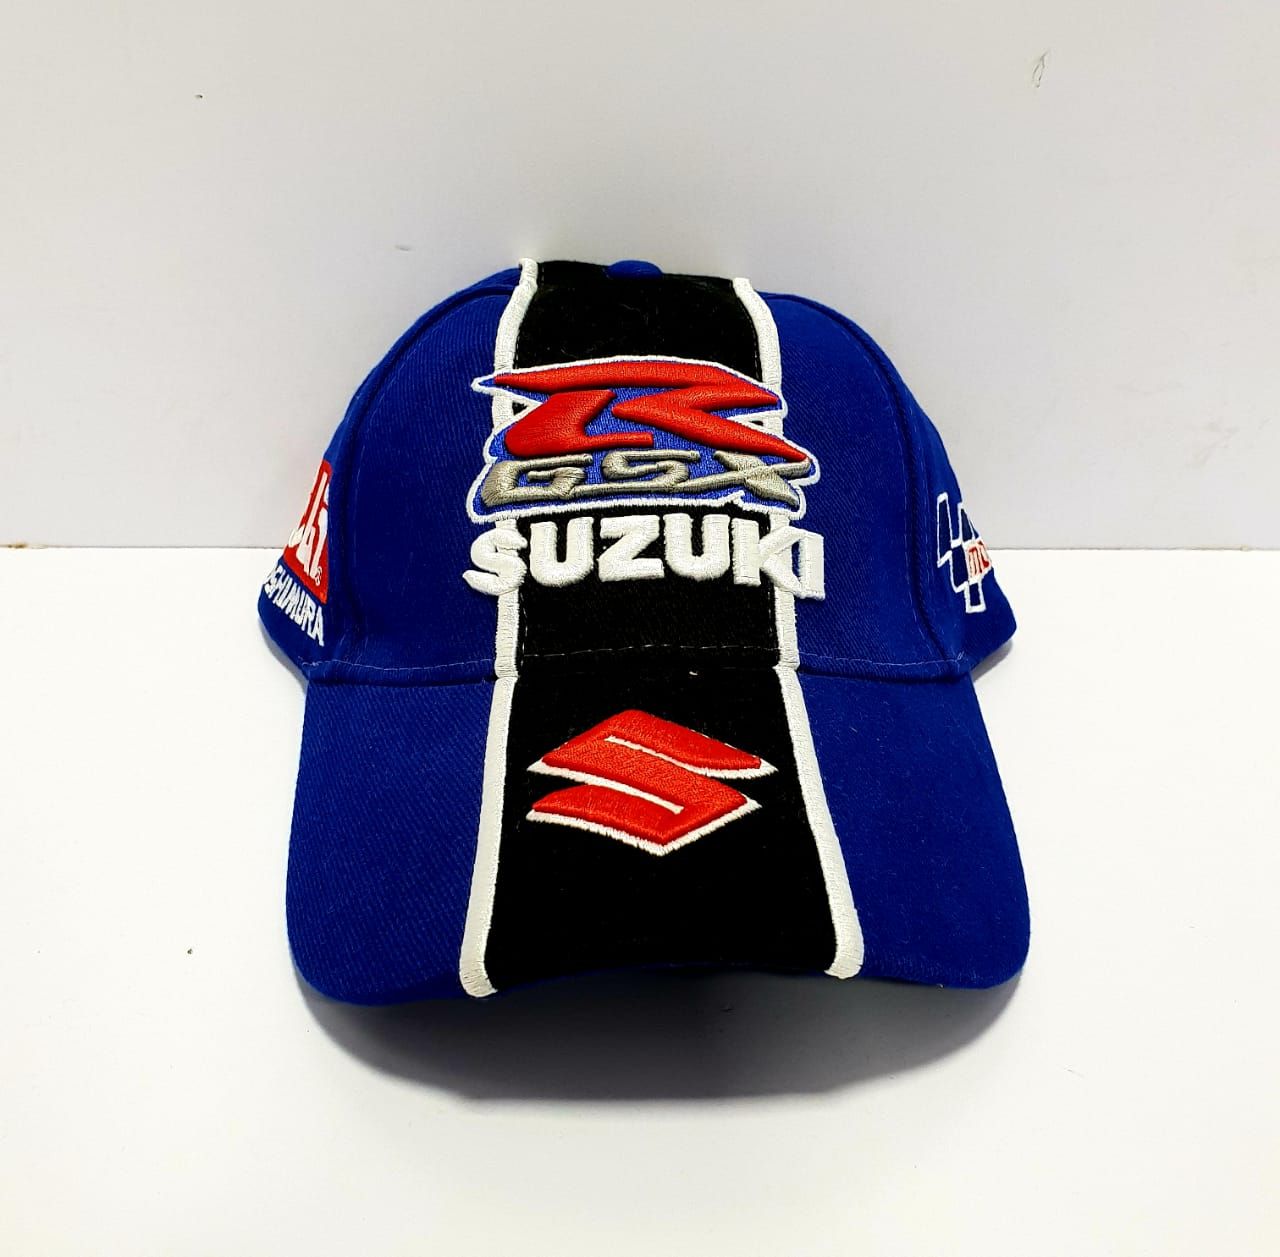 Suzuki R GSX Blue Black Cap